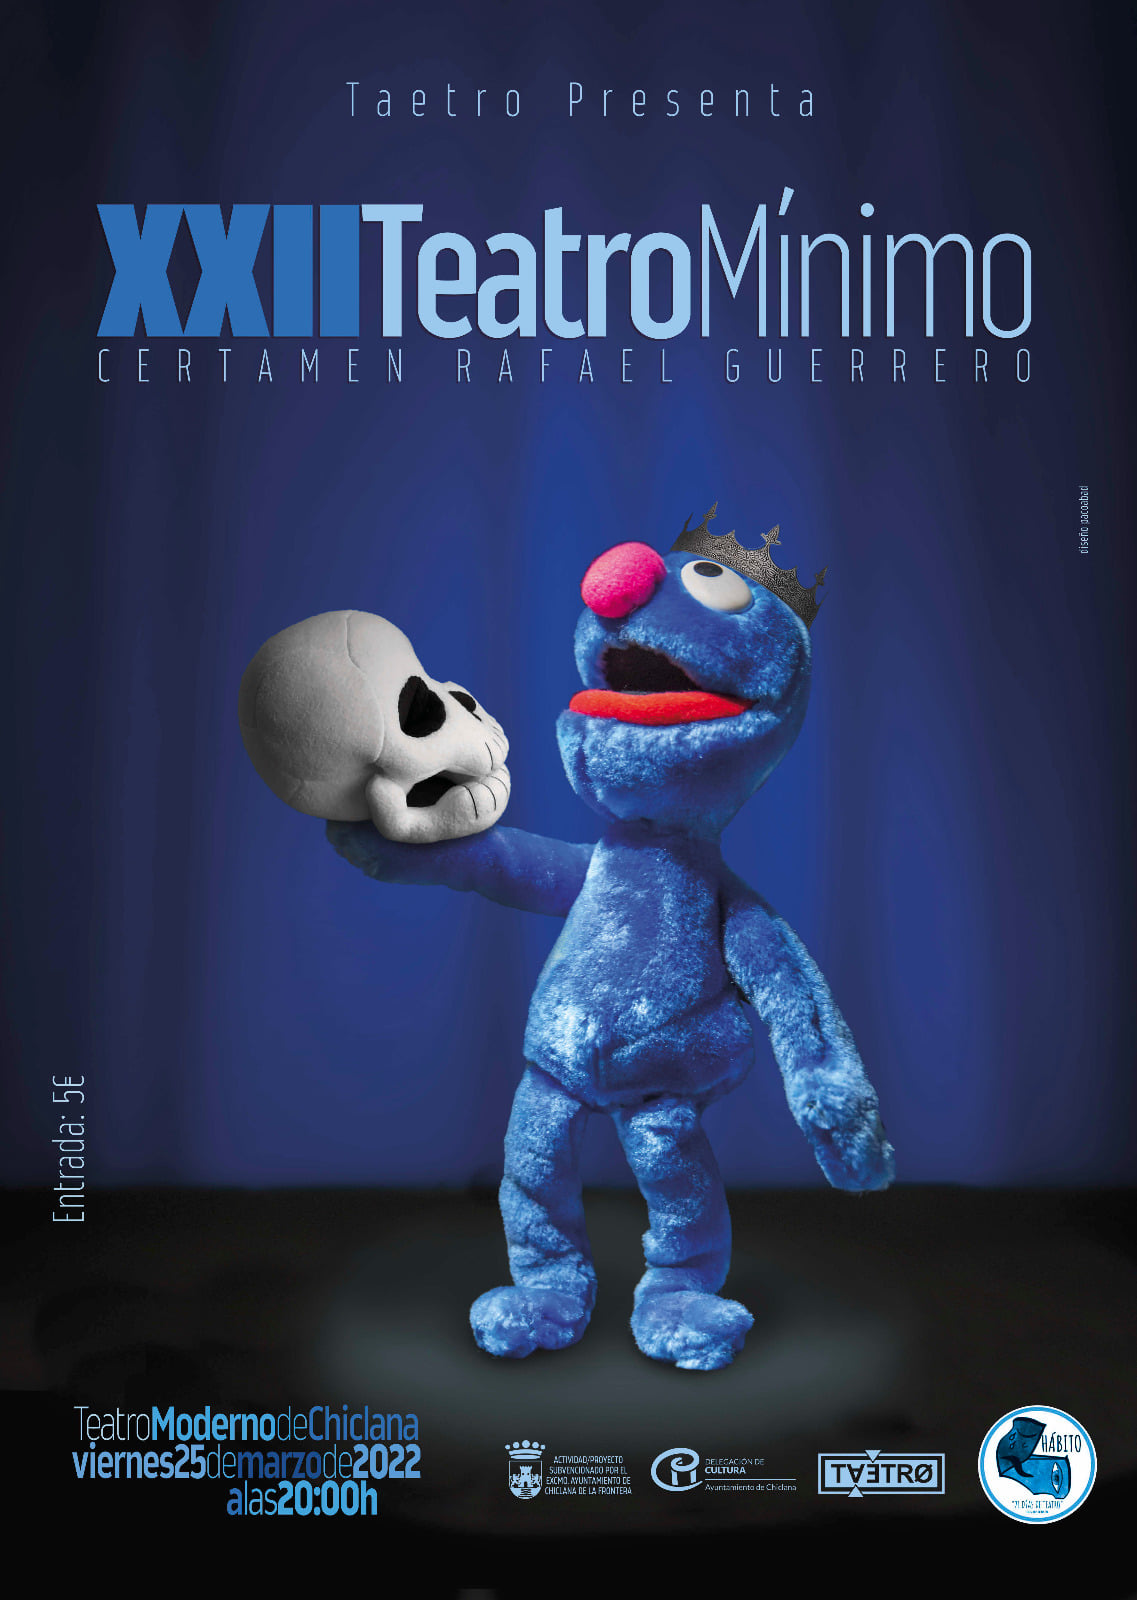 Publicados los premios XXIII Certamen Teatro Mínimo Rafael Guerrero